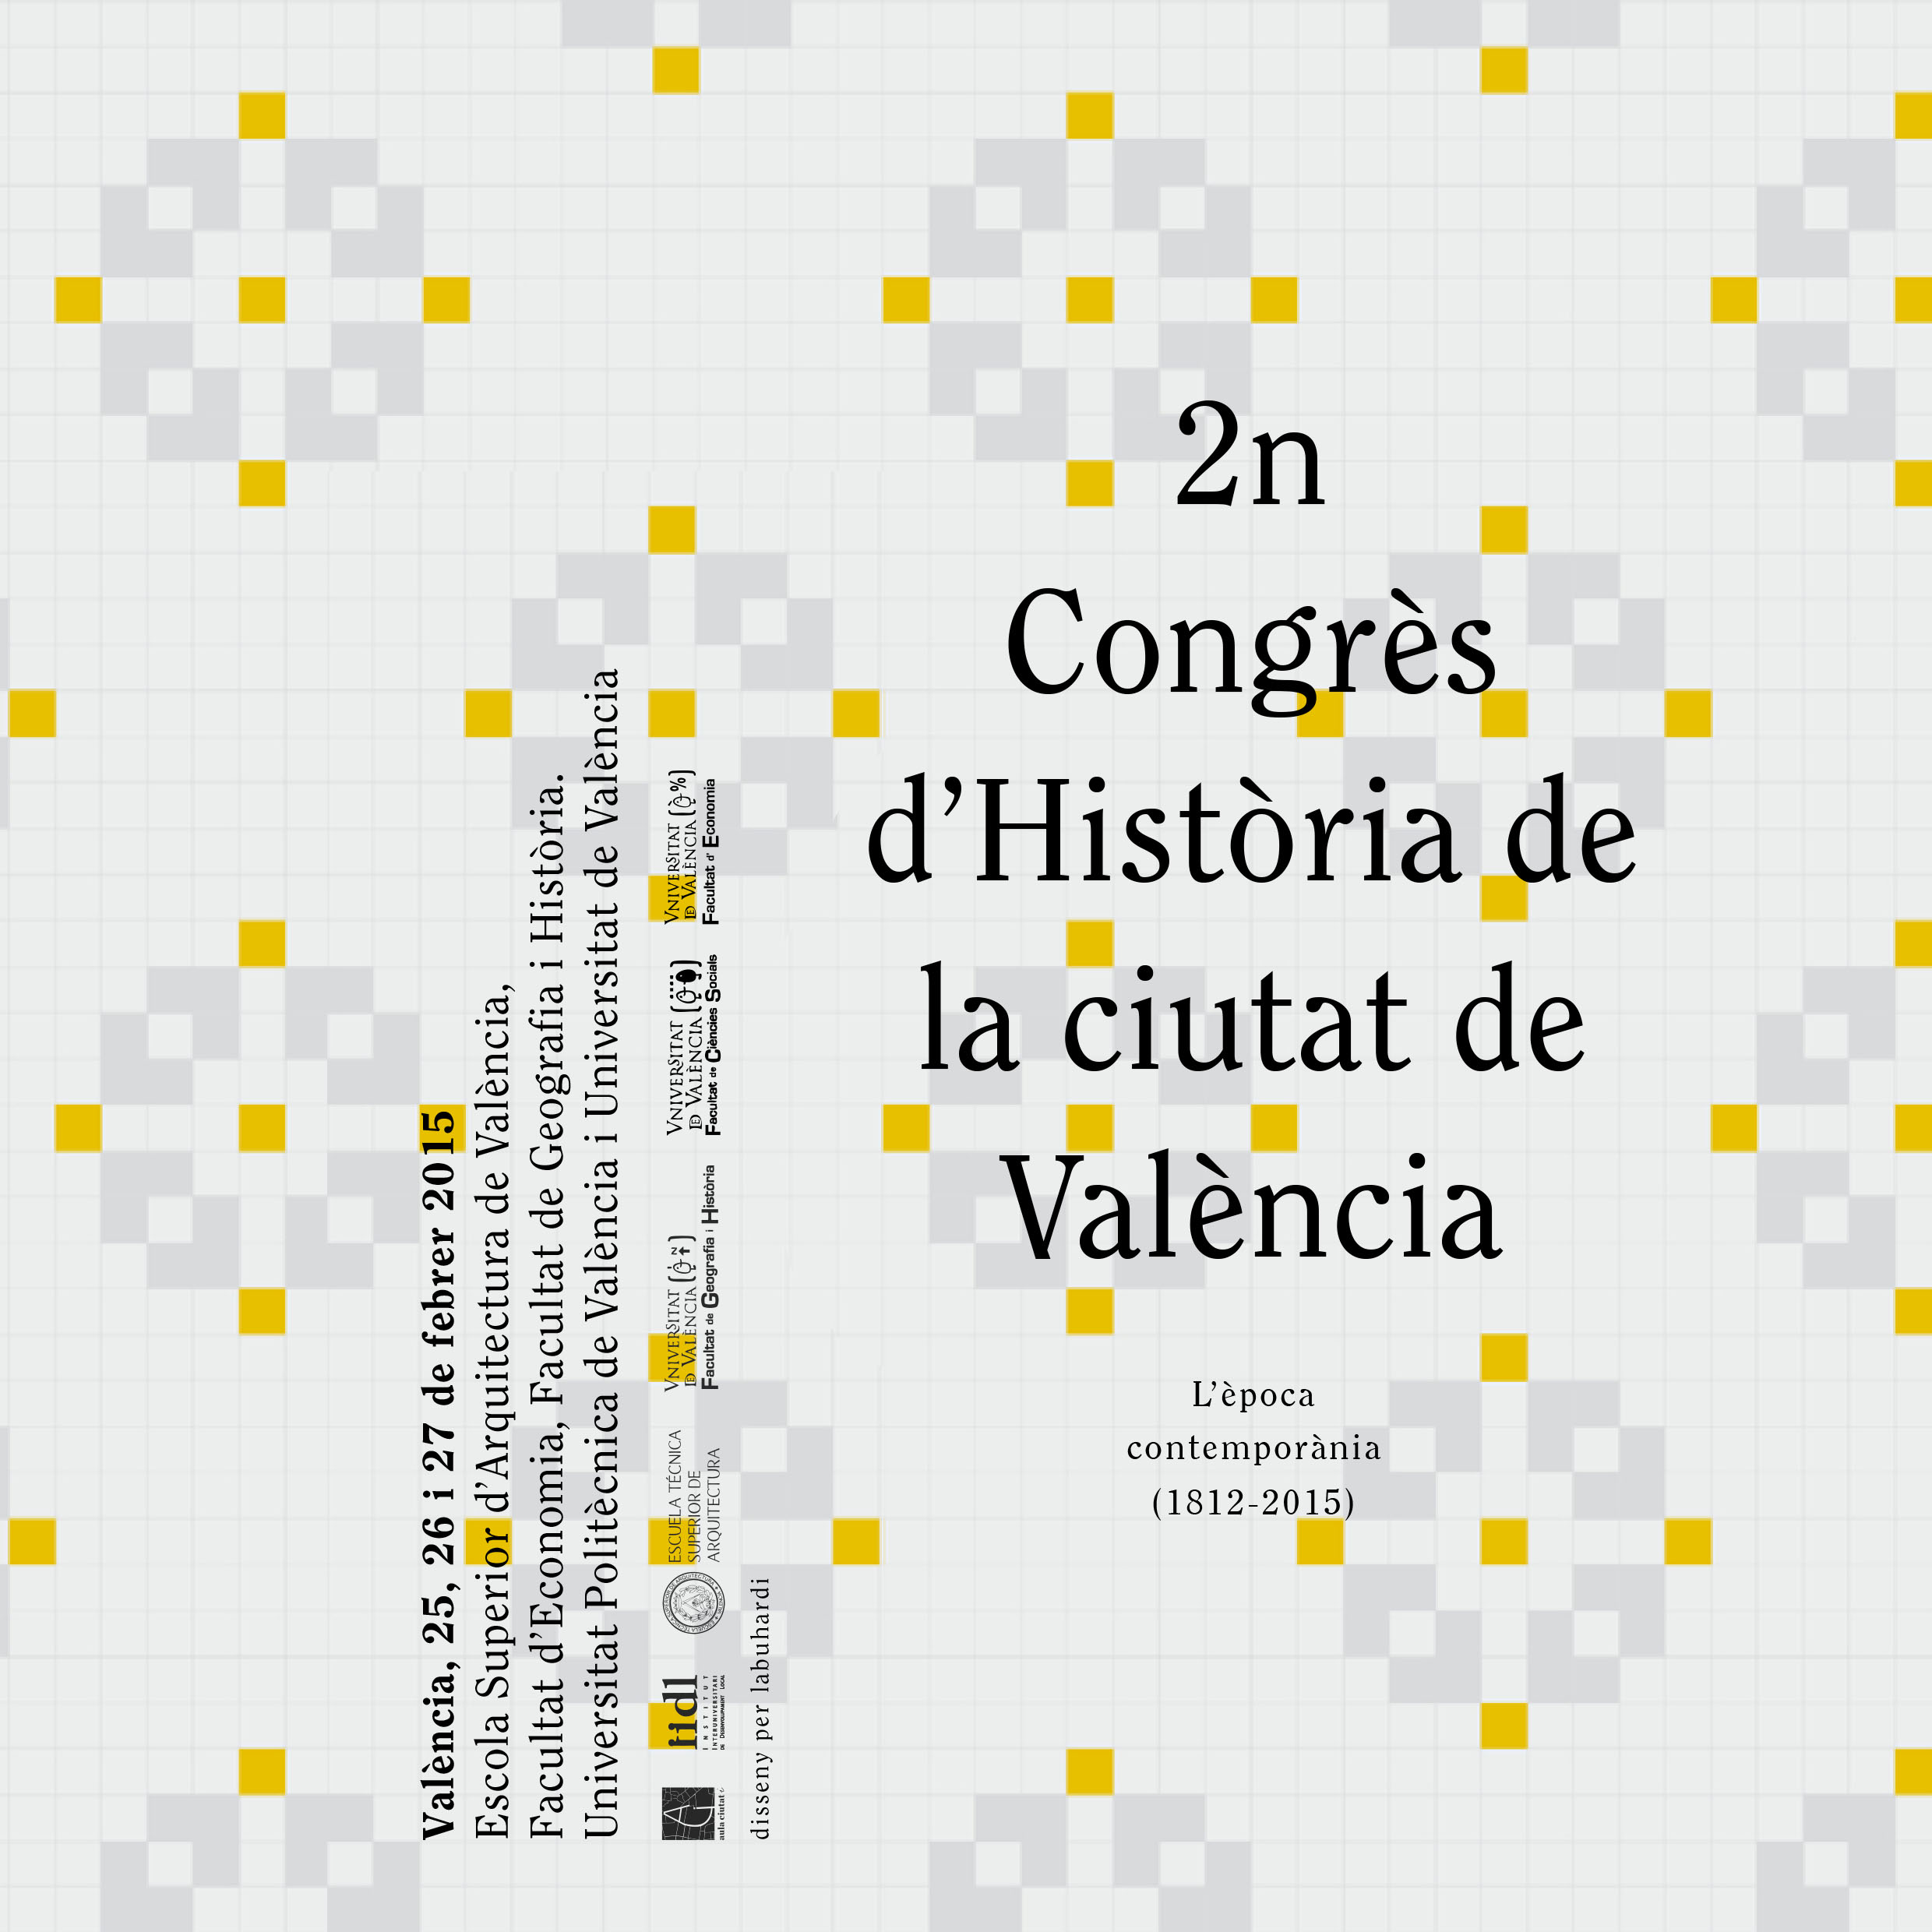 2n Congrès d’Història de la ciutat de València